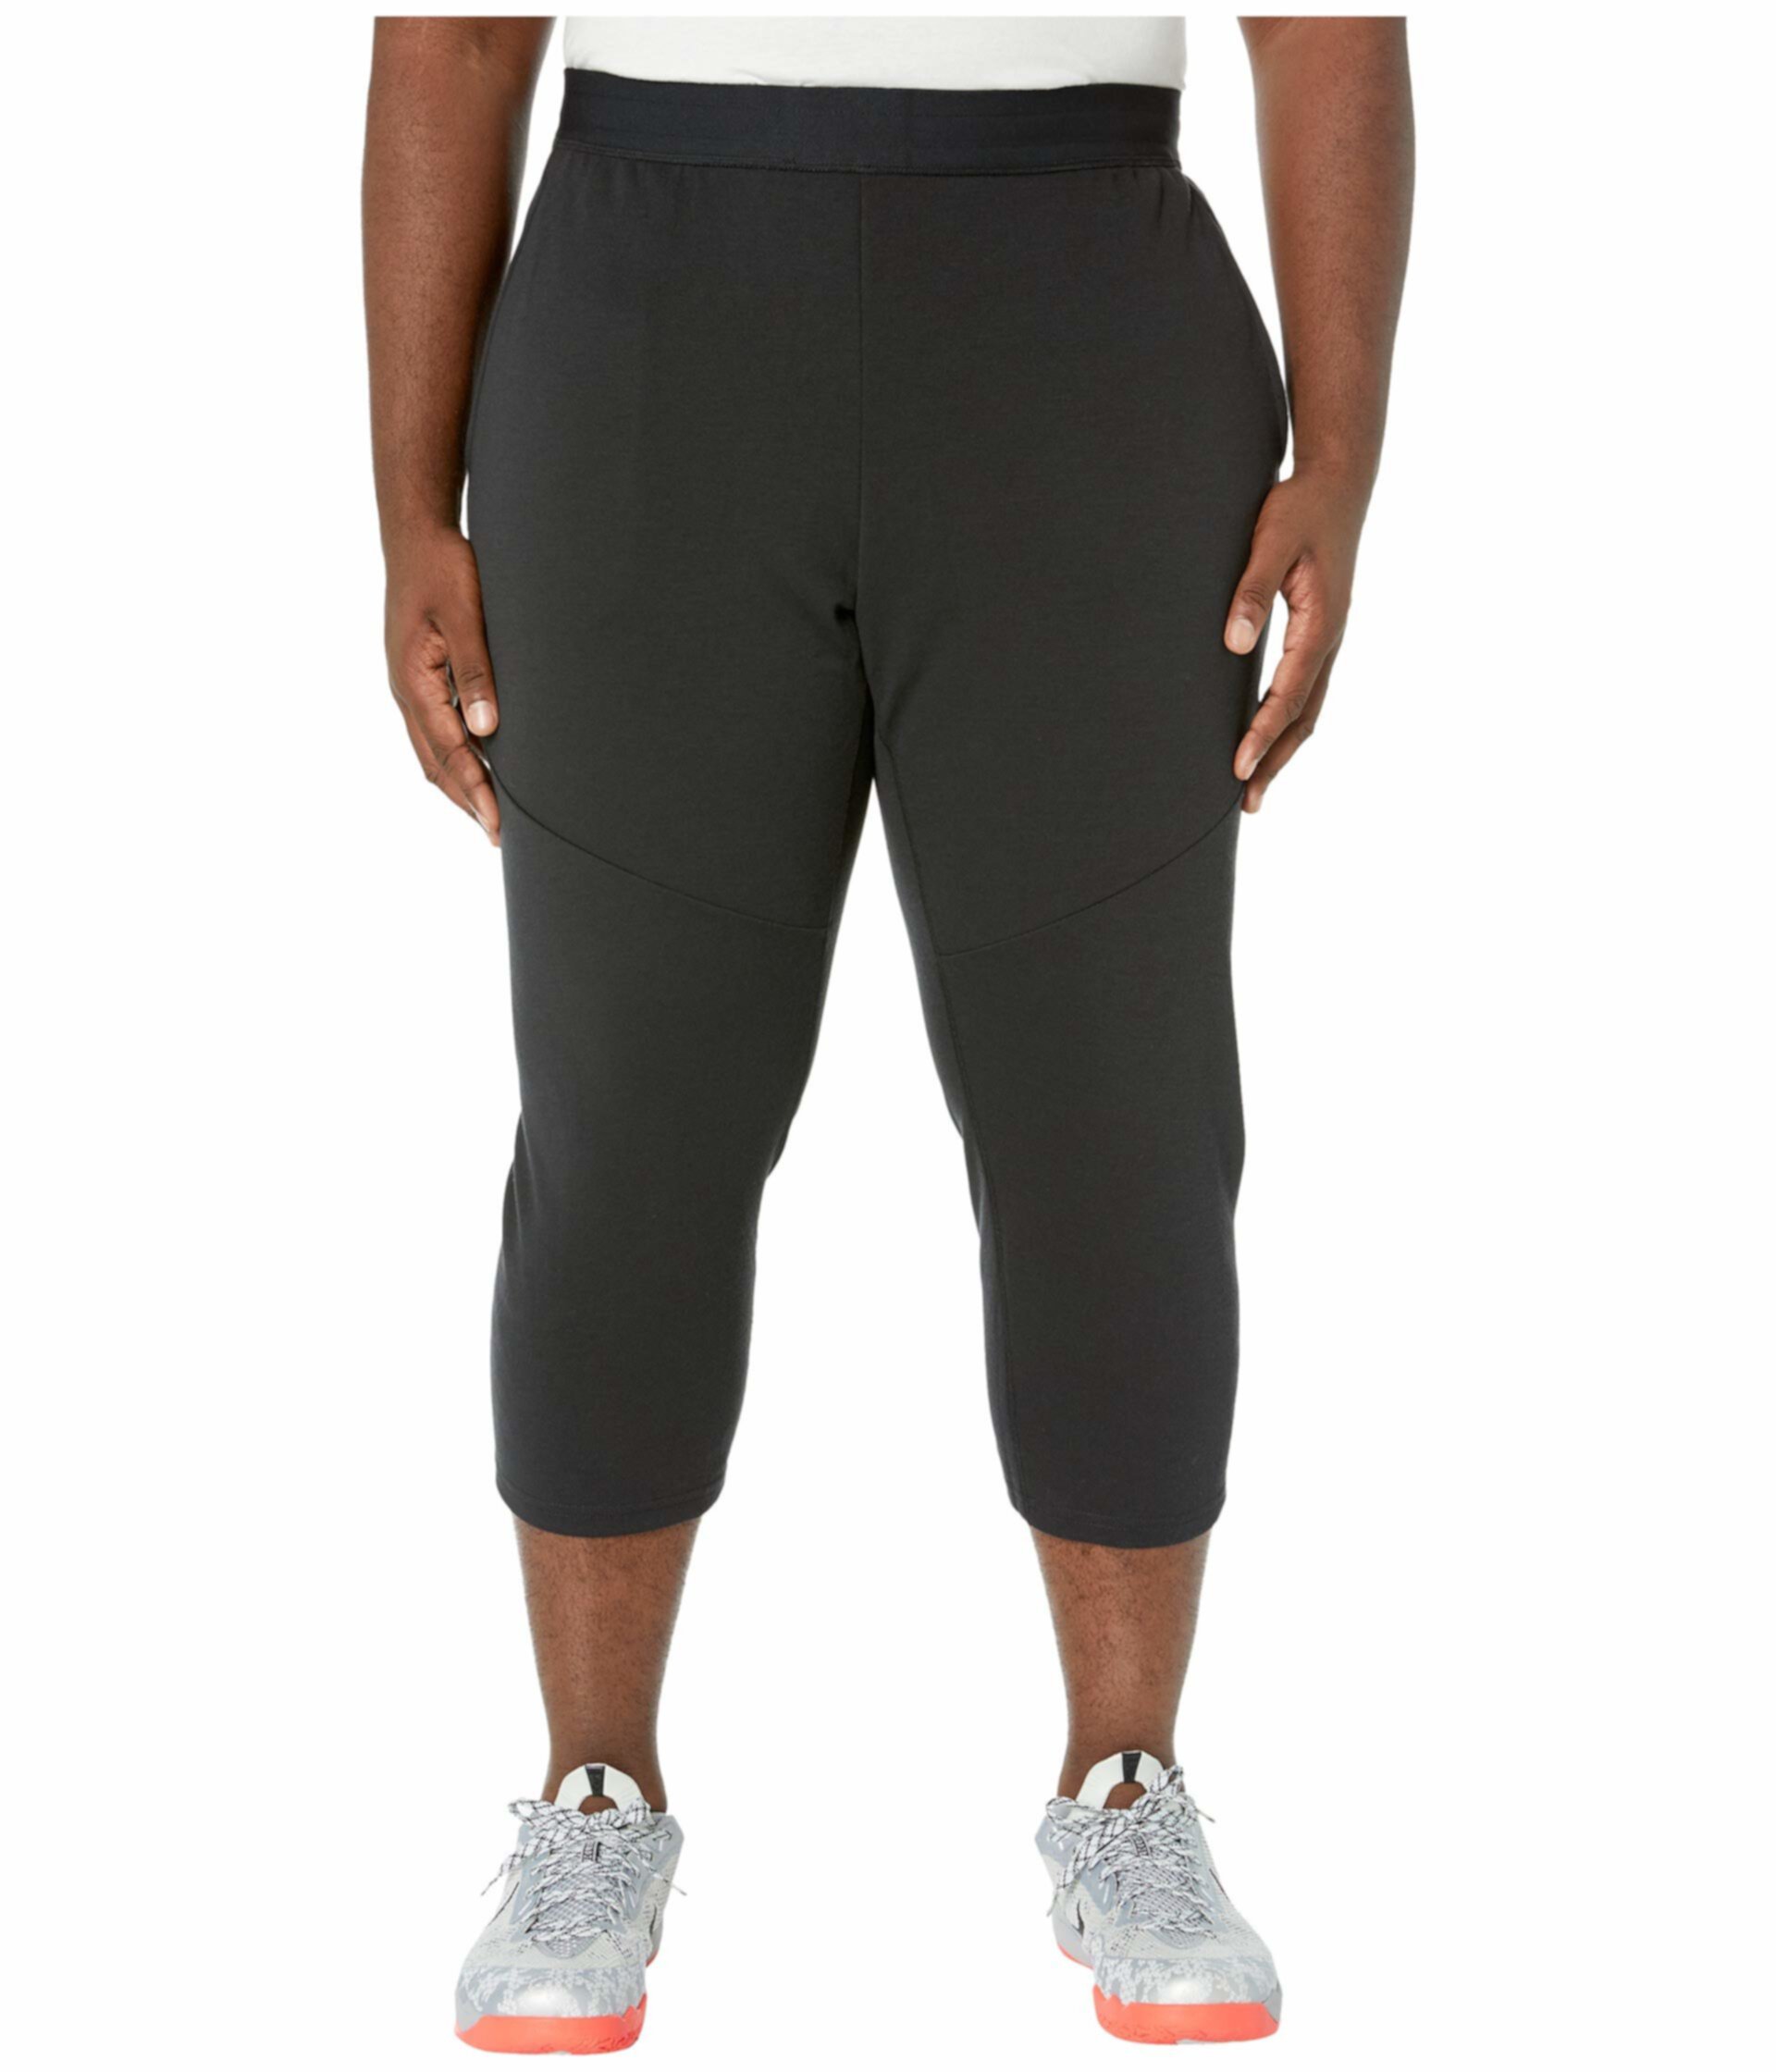 Большие и высокие сухие флисовые штаны 3QT Hyper Dry Nike